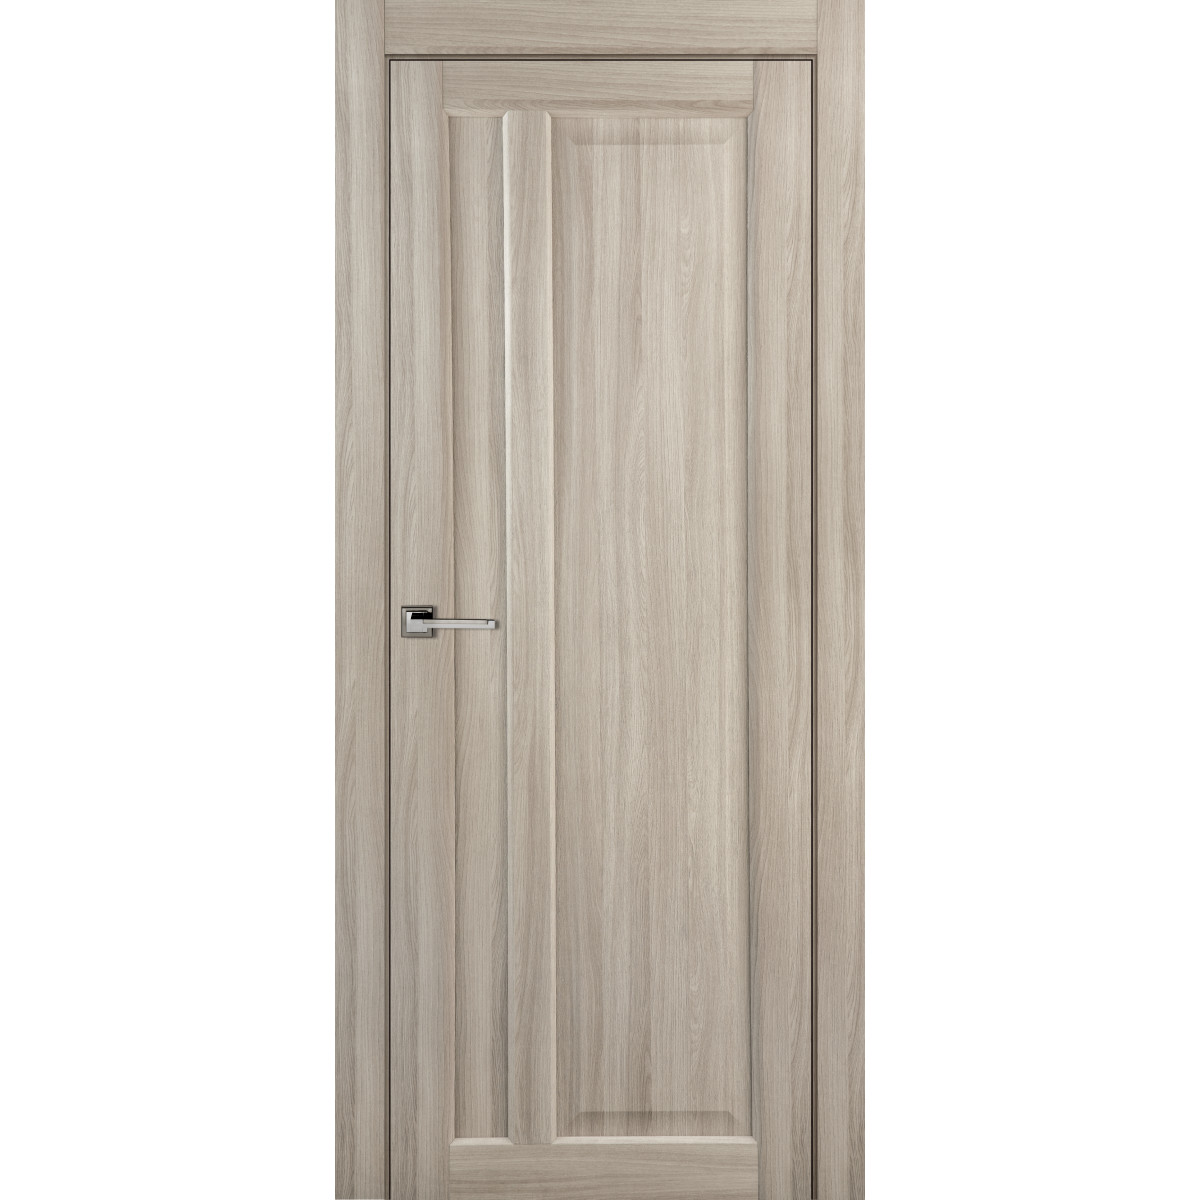 Дверь межкомнатная глухая Artens Мария 70x200 см, ПВХ, цвет шимо, с замком в комплекте